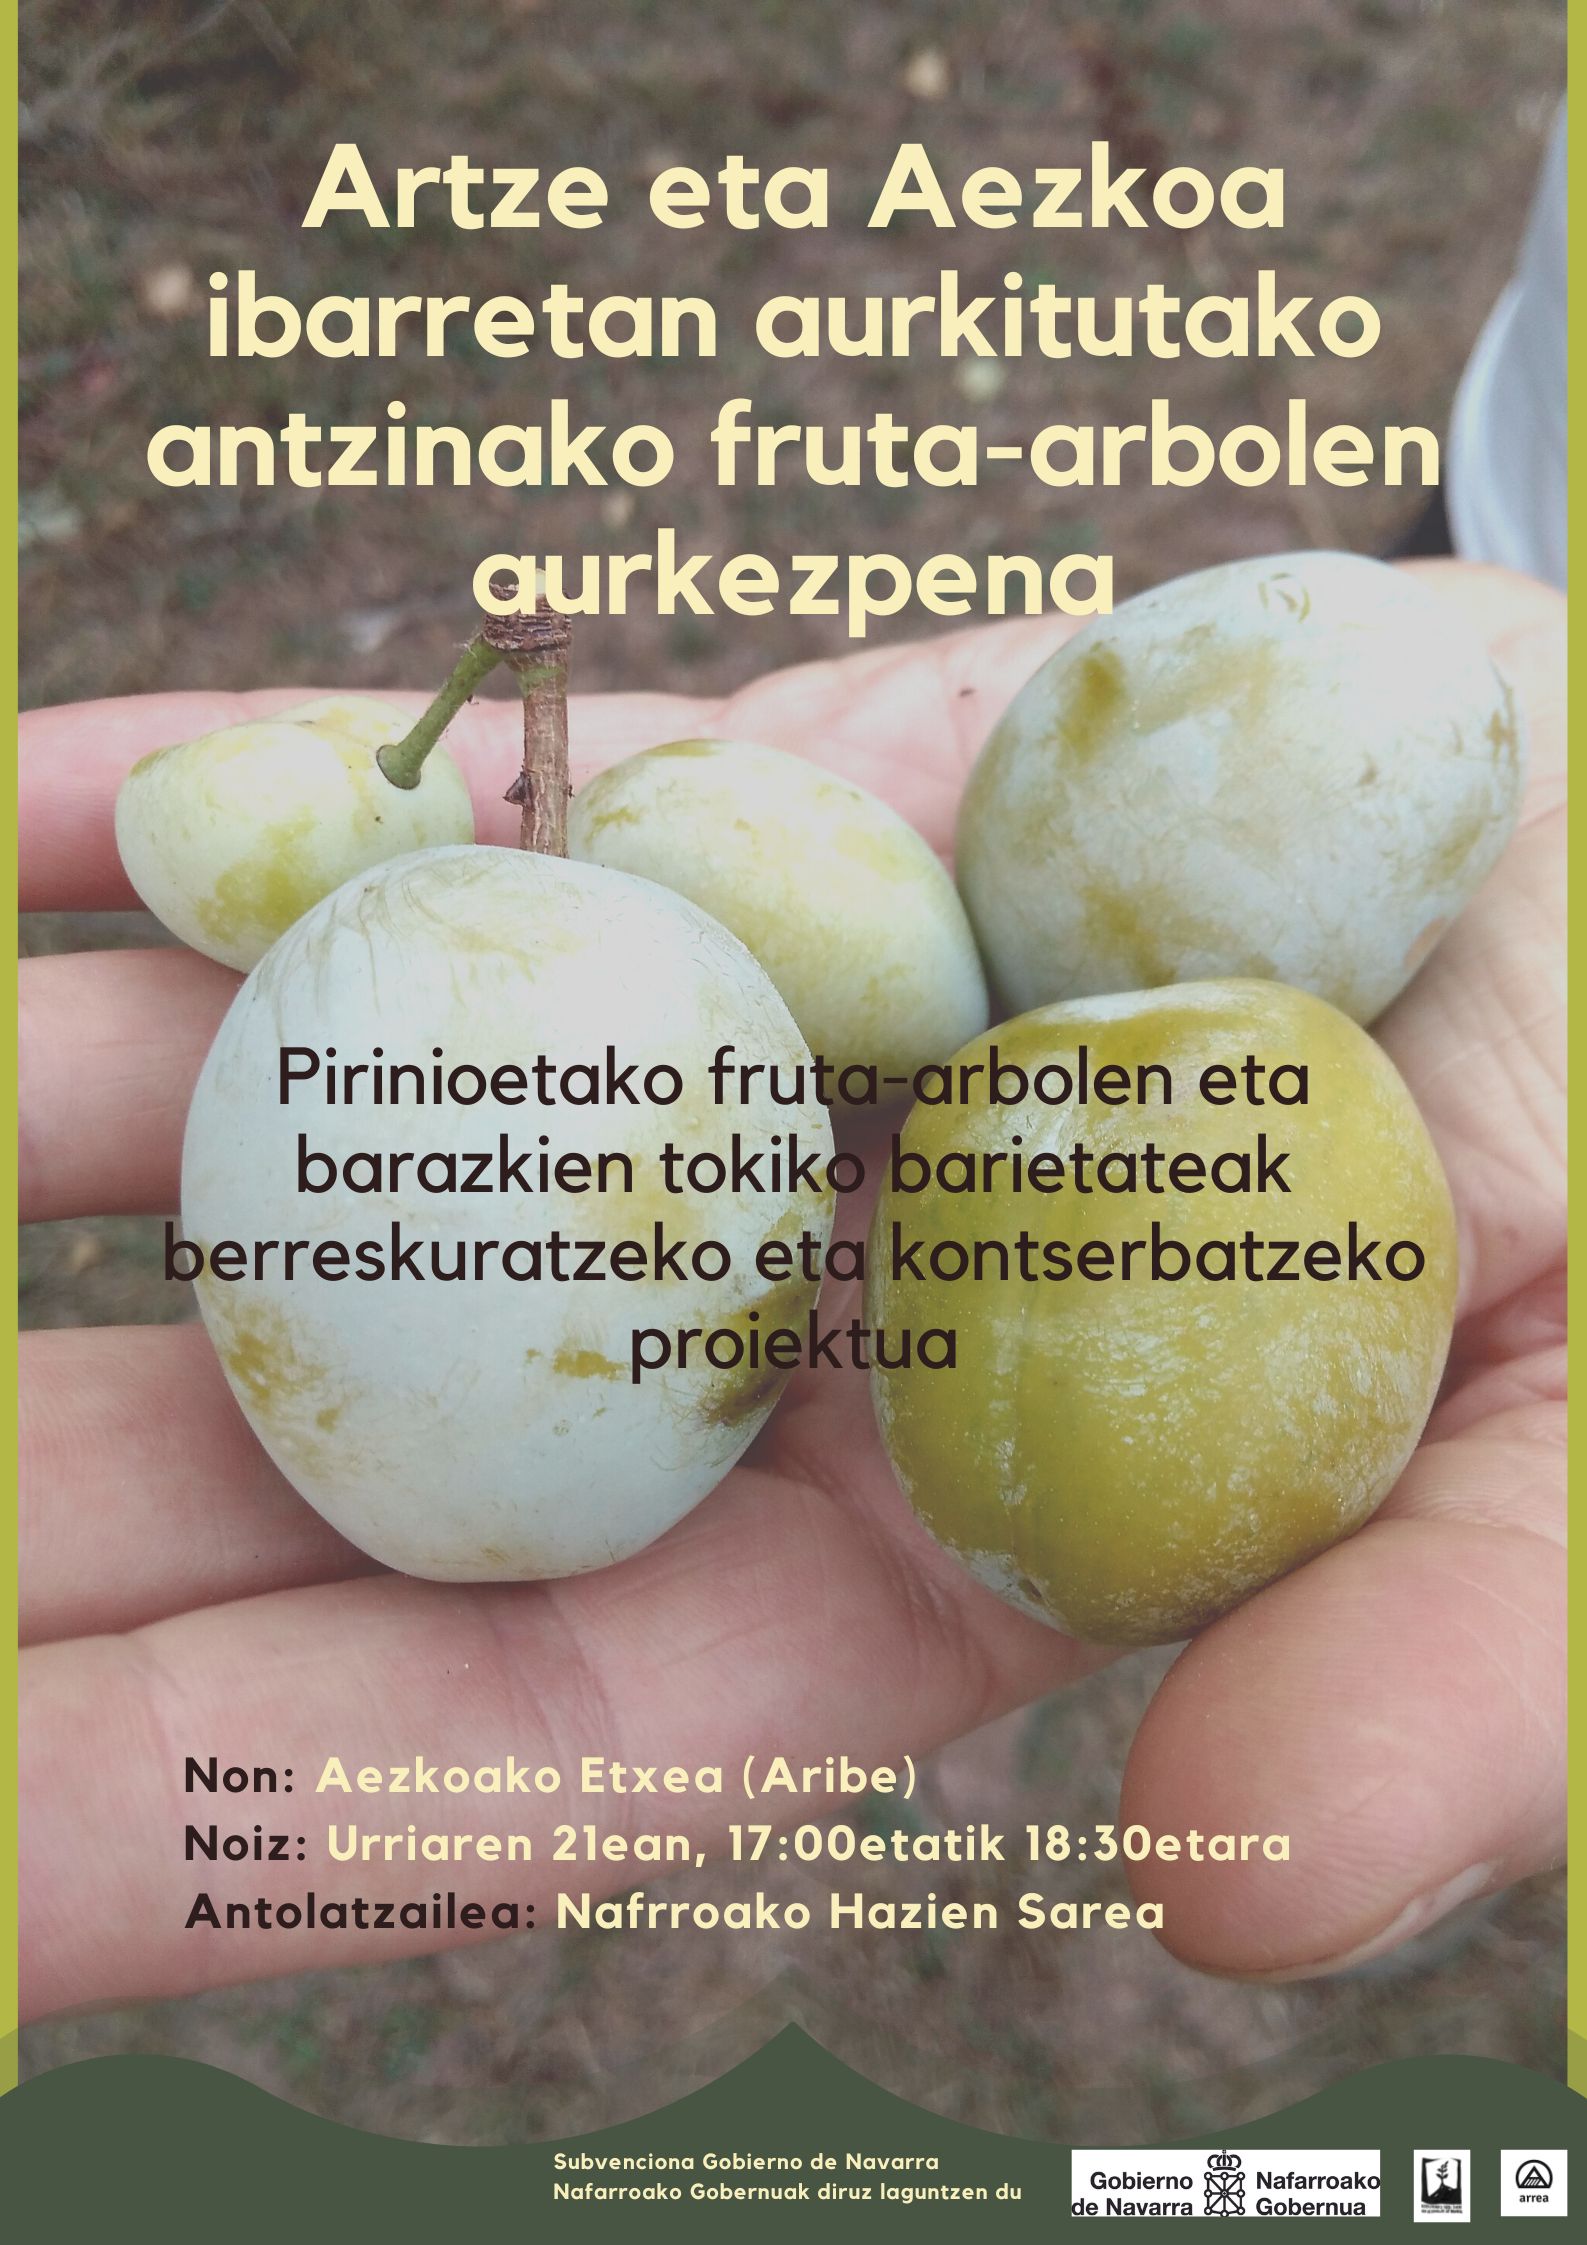 Artze eta Aezkoan aurkitutako antzinako fruta-arbolak